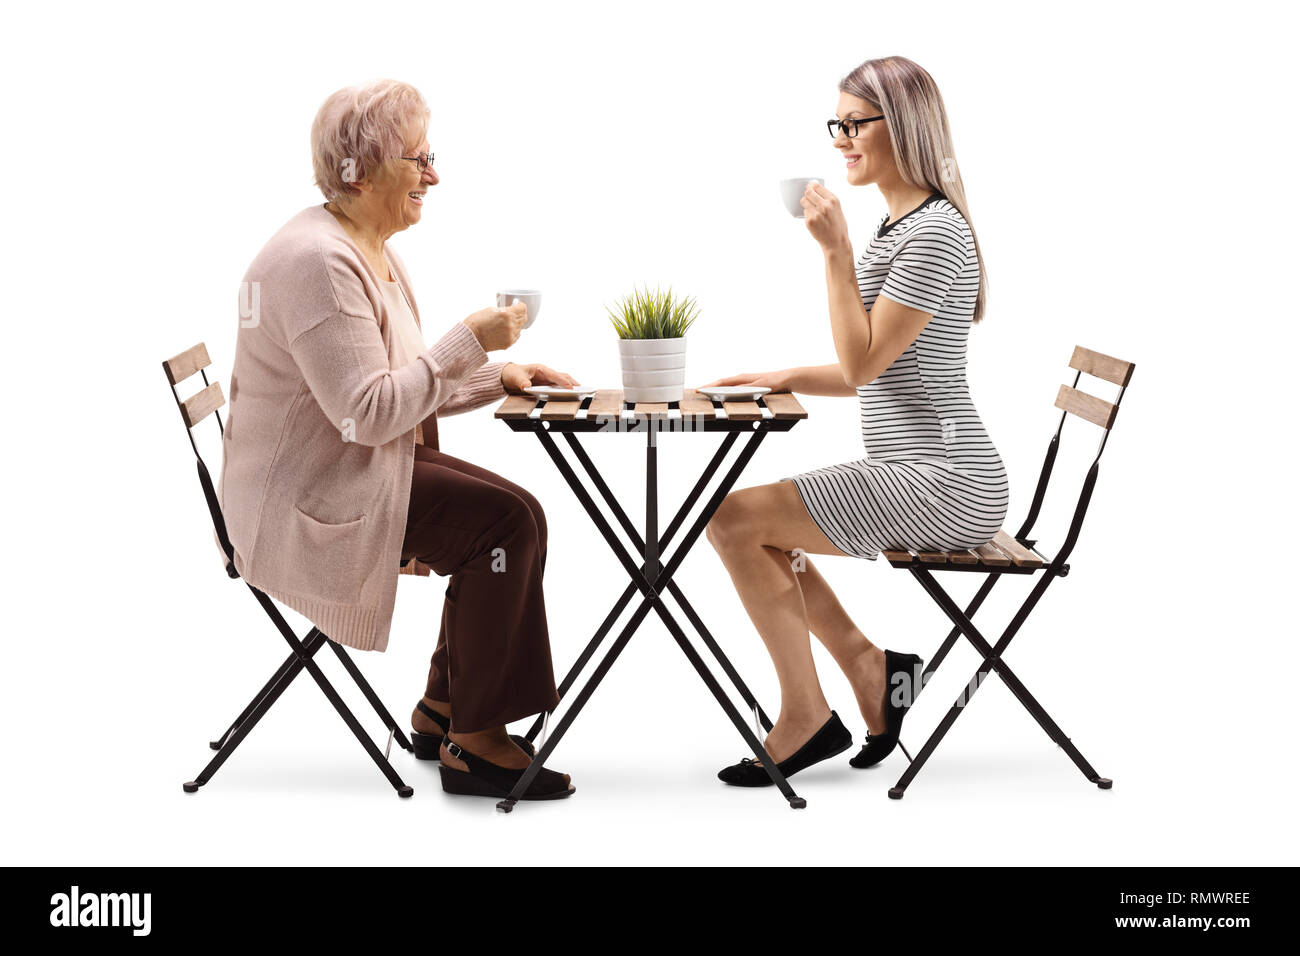 Profil de pleine longueur de balle a senior woman drinking coffee avec une jeune femme à une table isolé sur fond blanc Banque D'Images